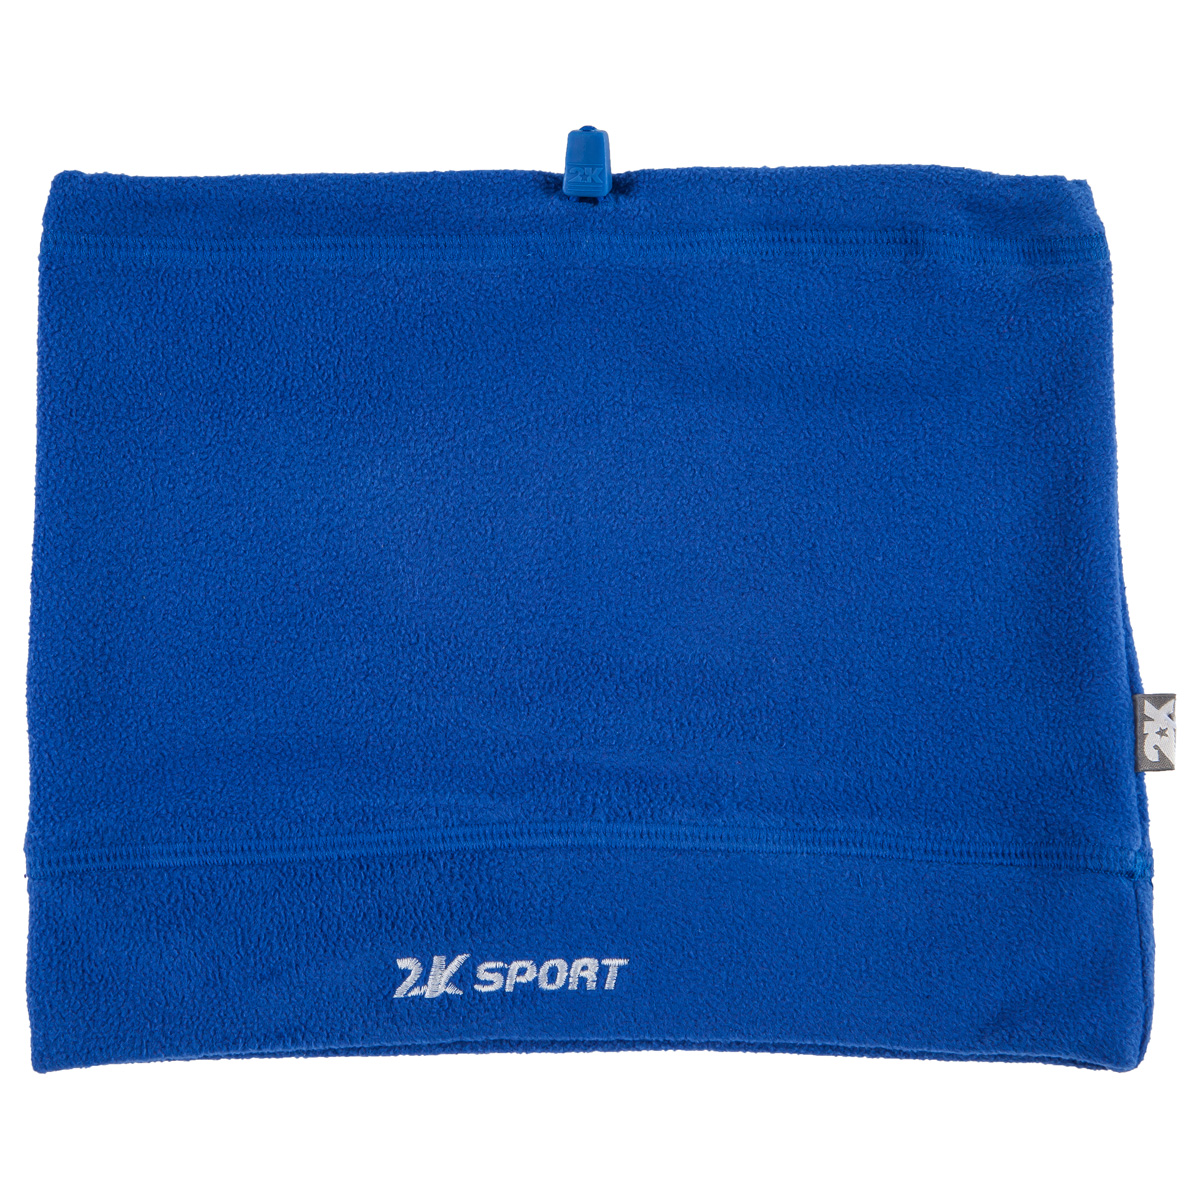 Шарф-трансформер 2K Sport Classic, цвет: синий. 124025-2. Размер универсальный